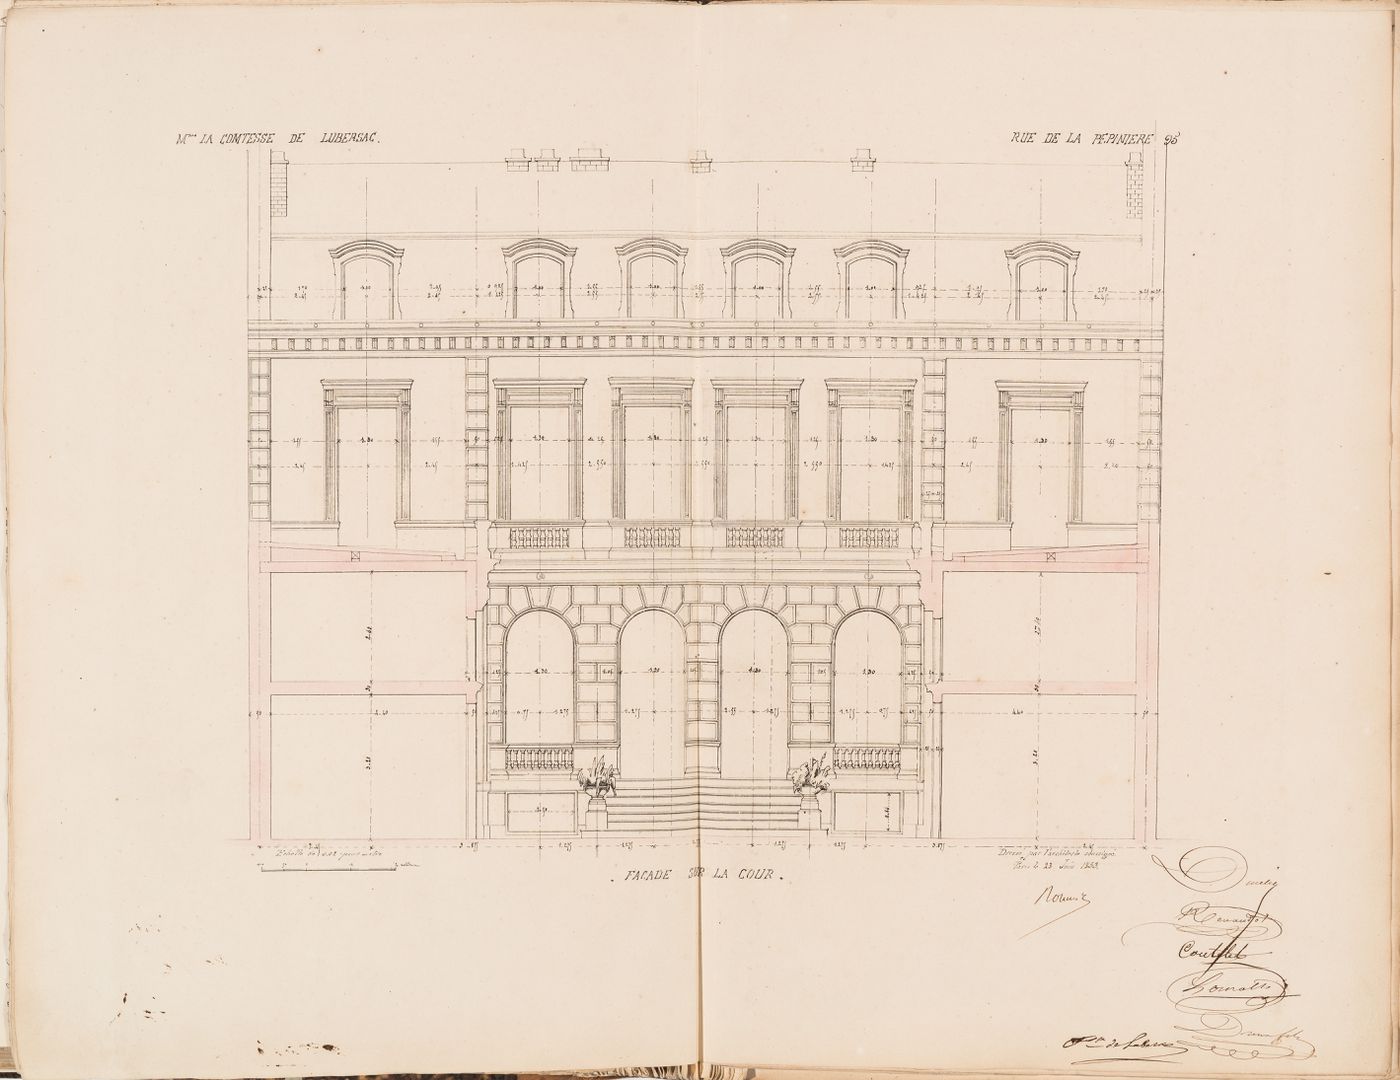 Contract drawing for a house for Madame la comtesse de Lubersac, 95 rue de la Pépinière, Paris: Sectional elevation for the courtyard façade